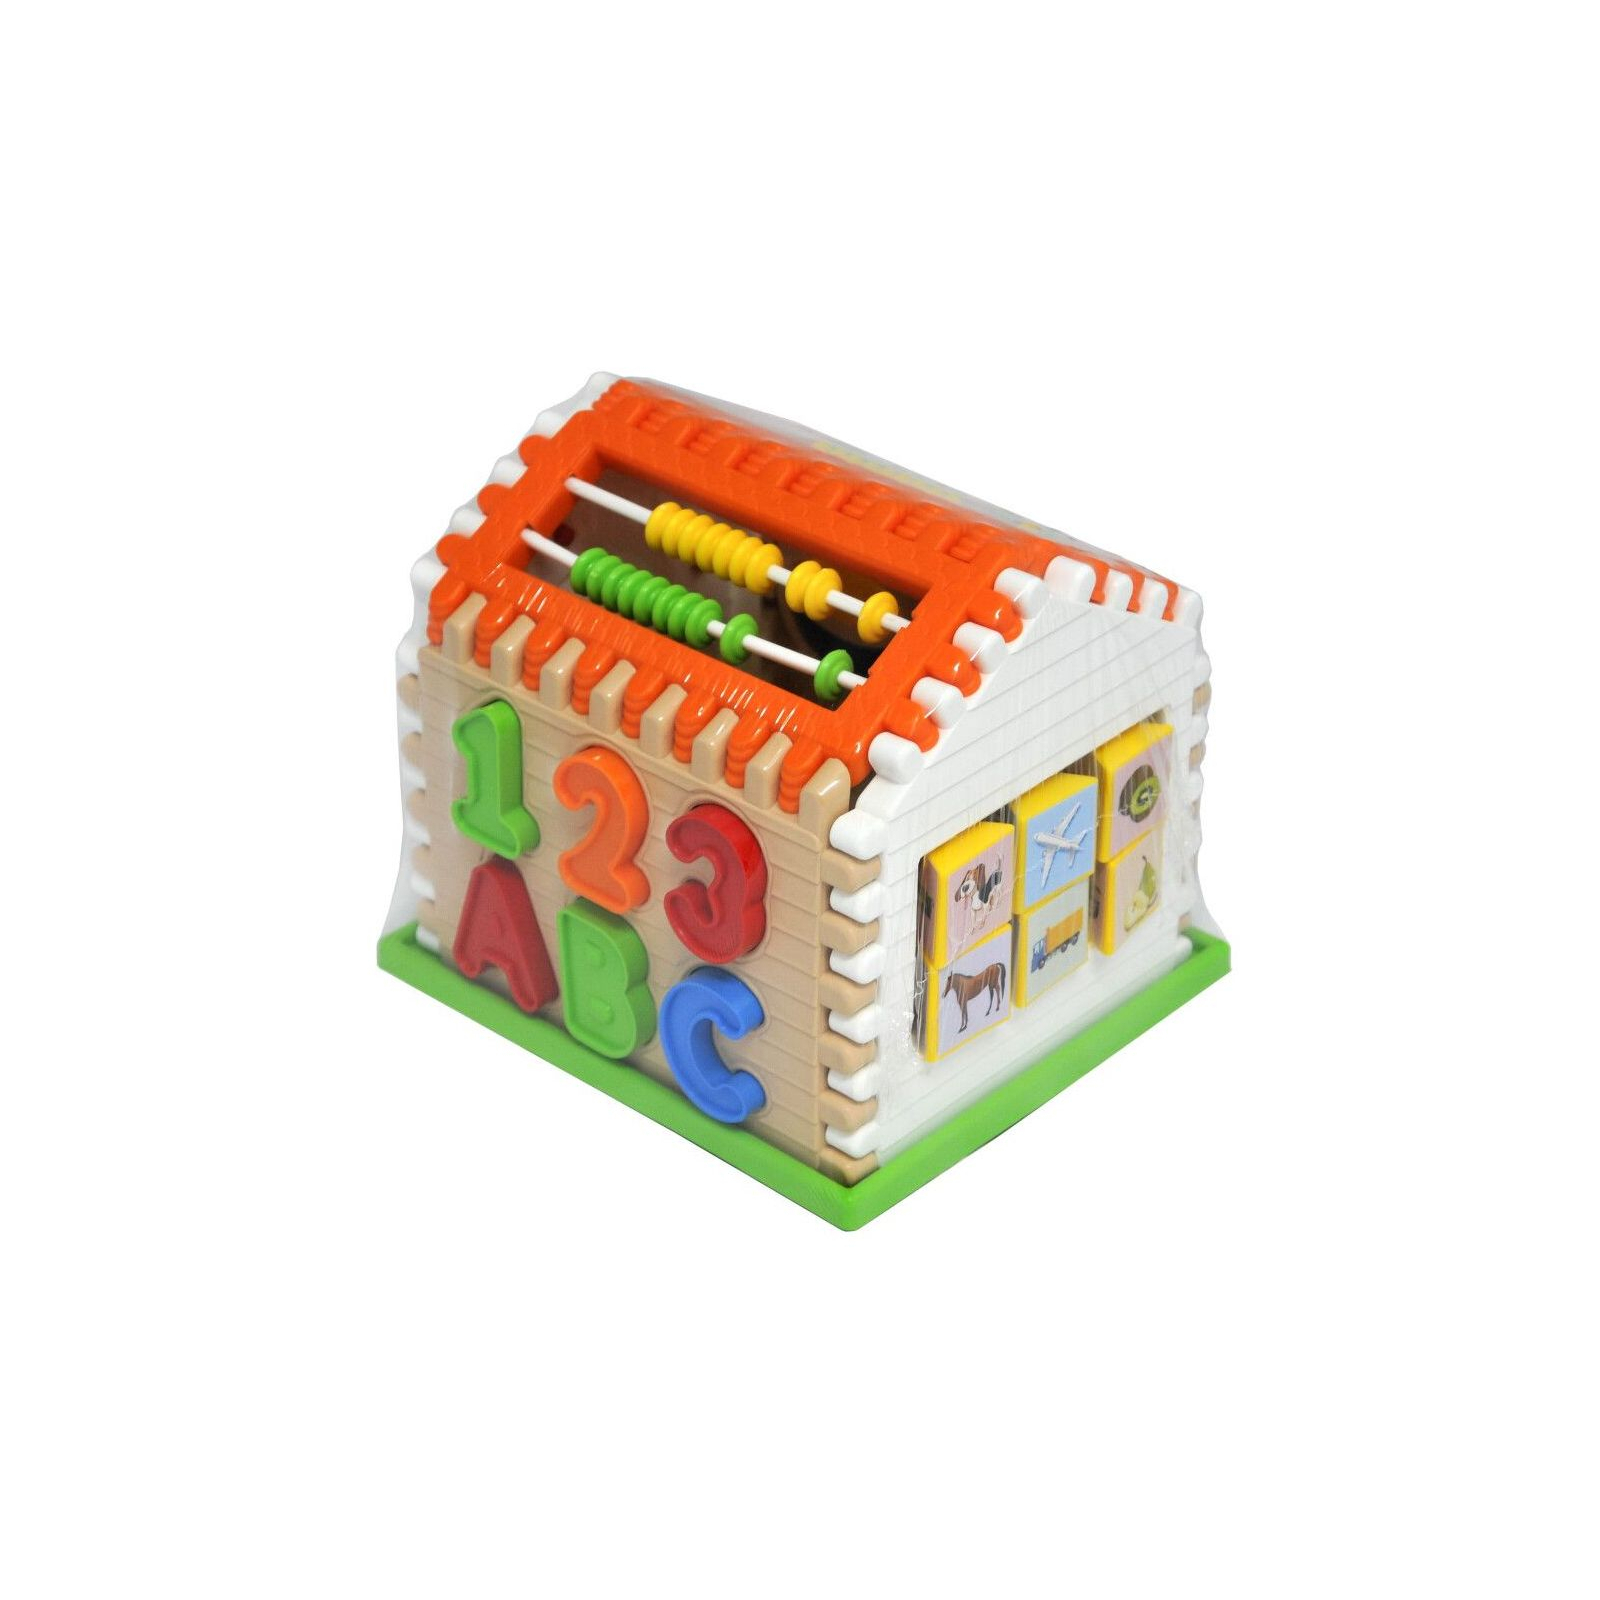 Развивающая игрушка Tigres сортер Smart house 21 элемент (39763) изображение 3